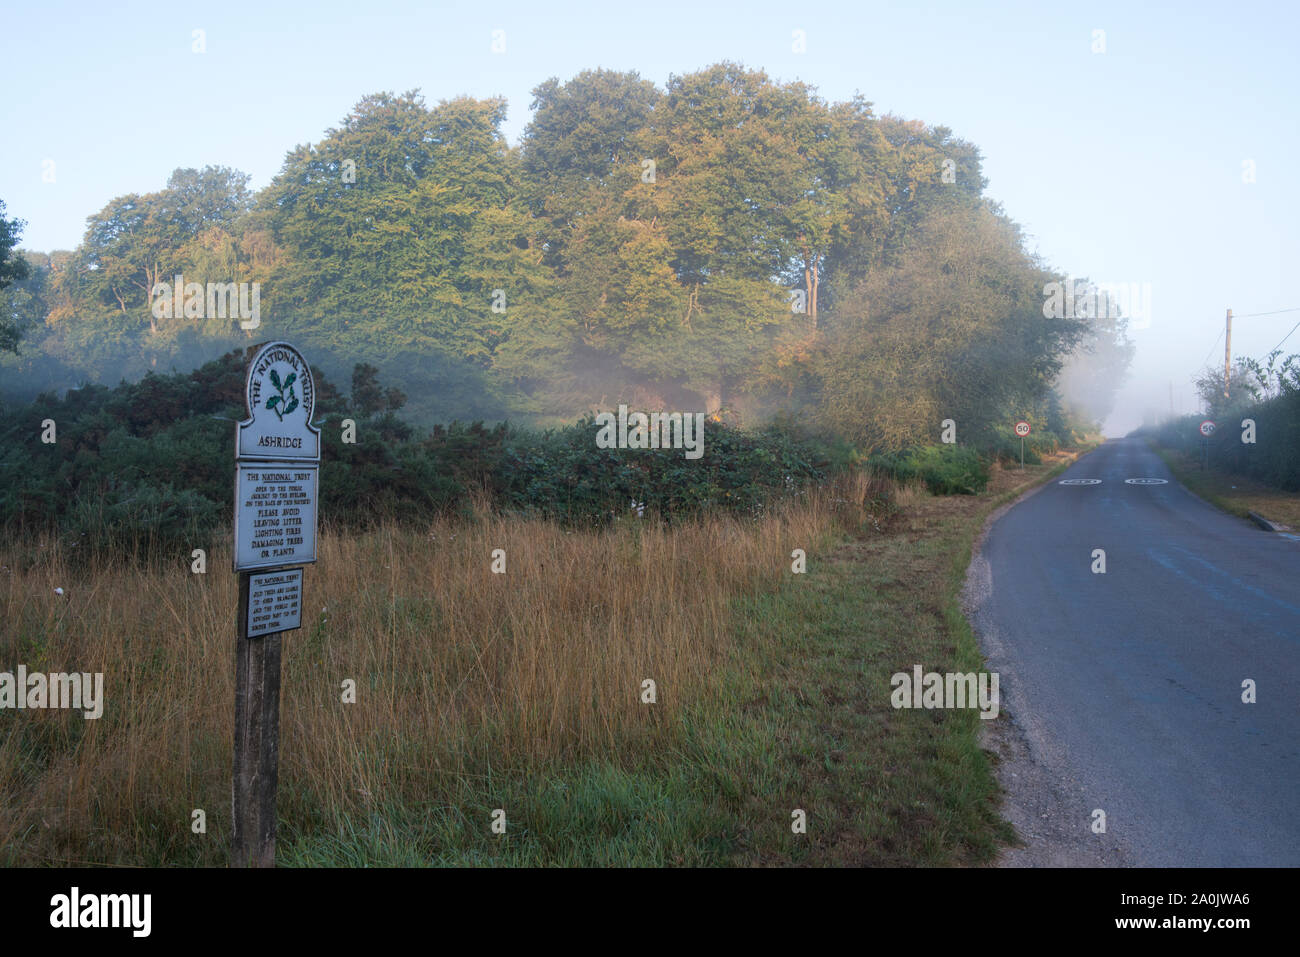 Morning Mist et près de l'entrée de Ling Ride sur une route sans nom près de Ringshall, Ashridge Woods, Hertfordshire, 20 Septembre 2019 Banque D'Images